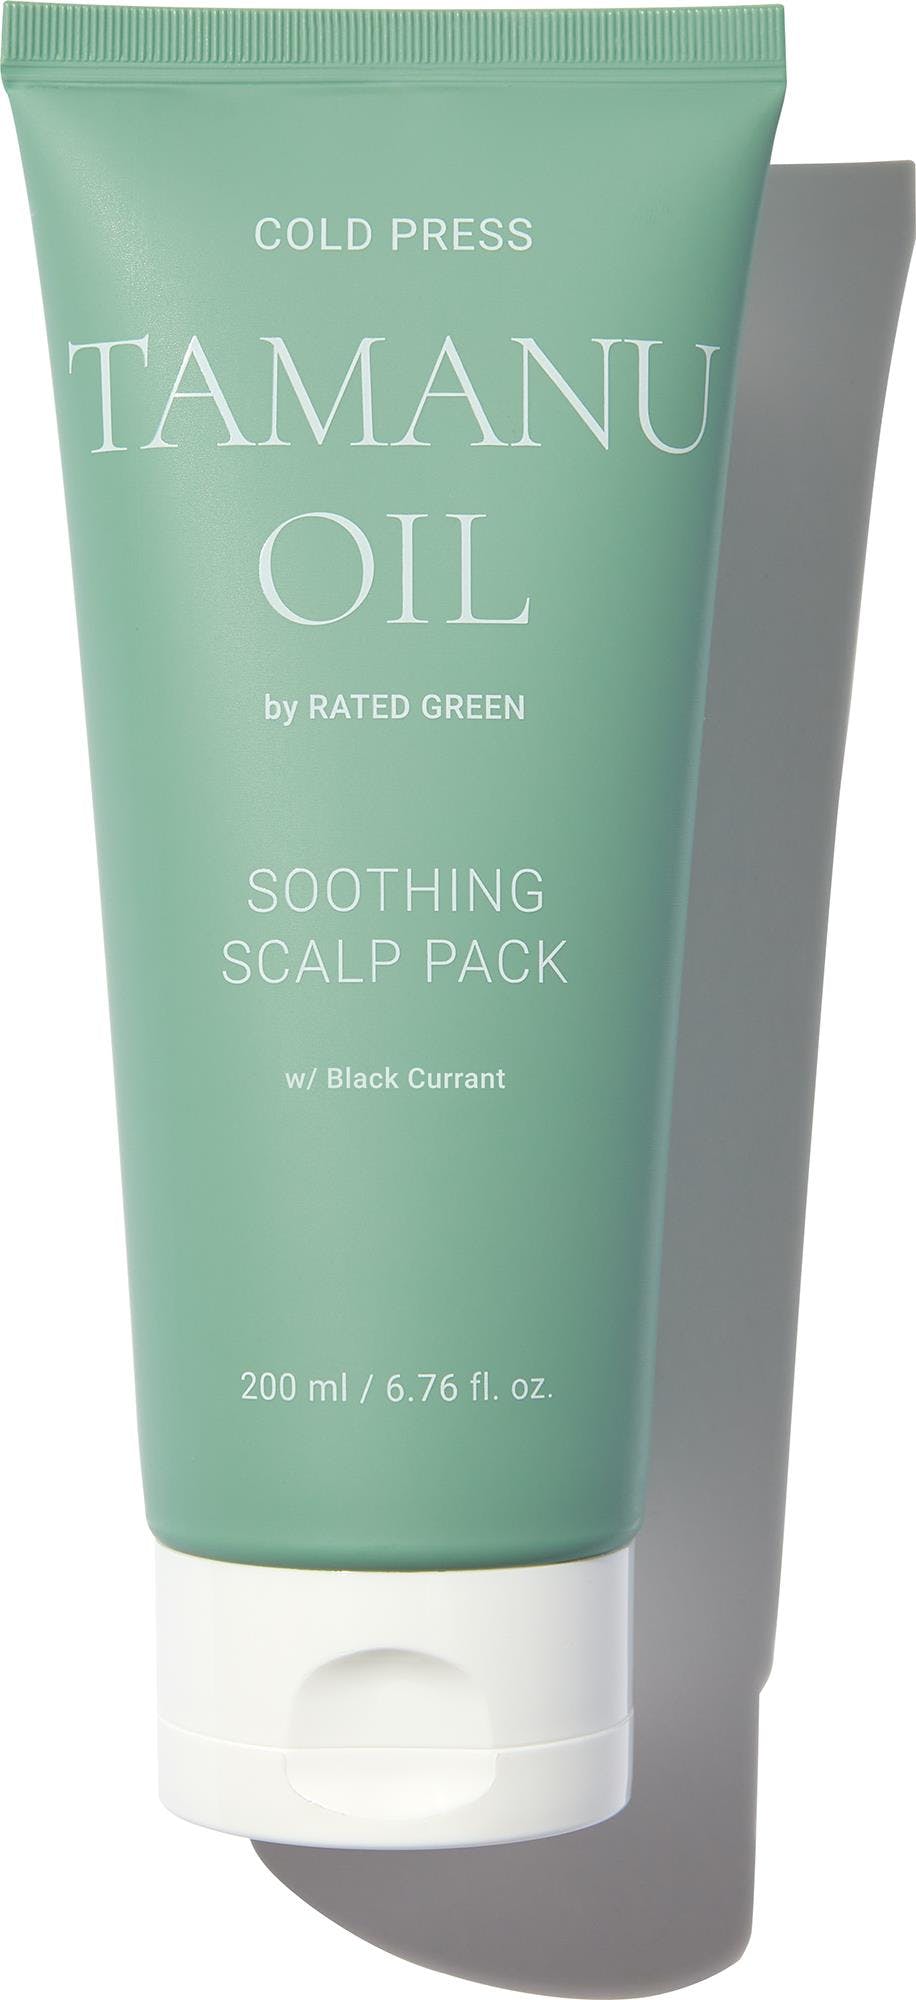 Rated Green Cold Press Tamanu Oil Soothing Scalp Pack Заспокійлива маска для шкіри голови з олією таману і чорною смородиною